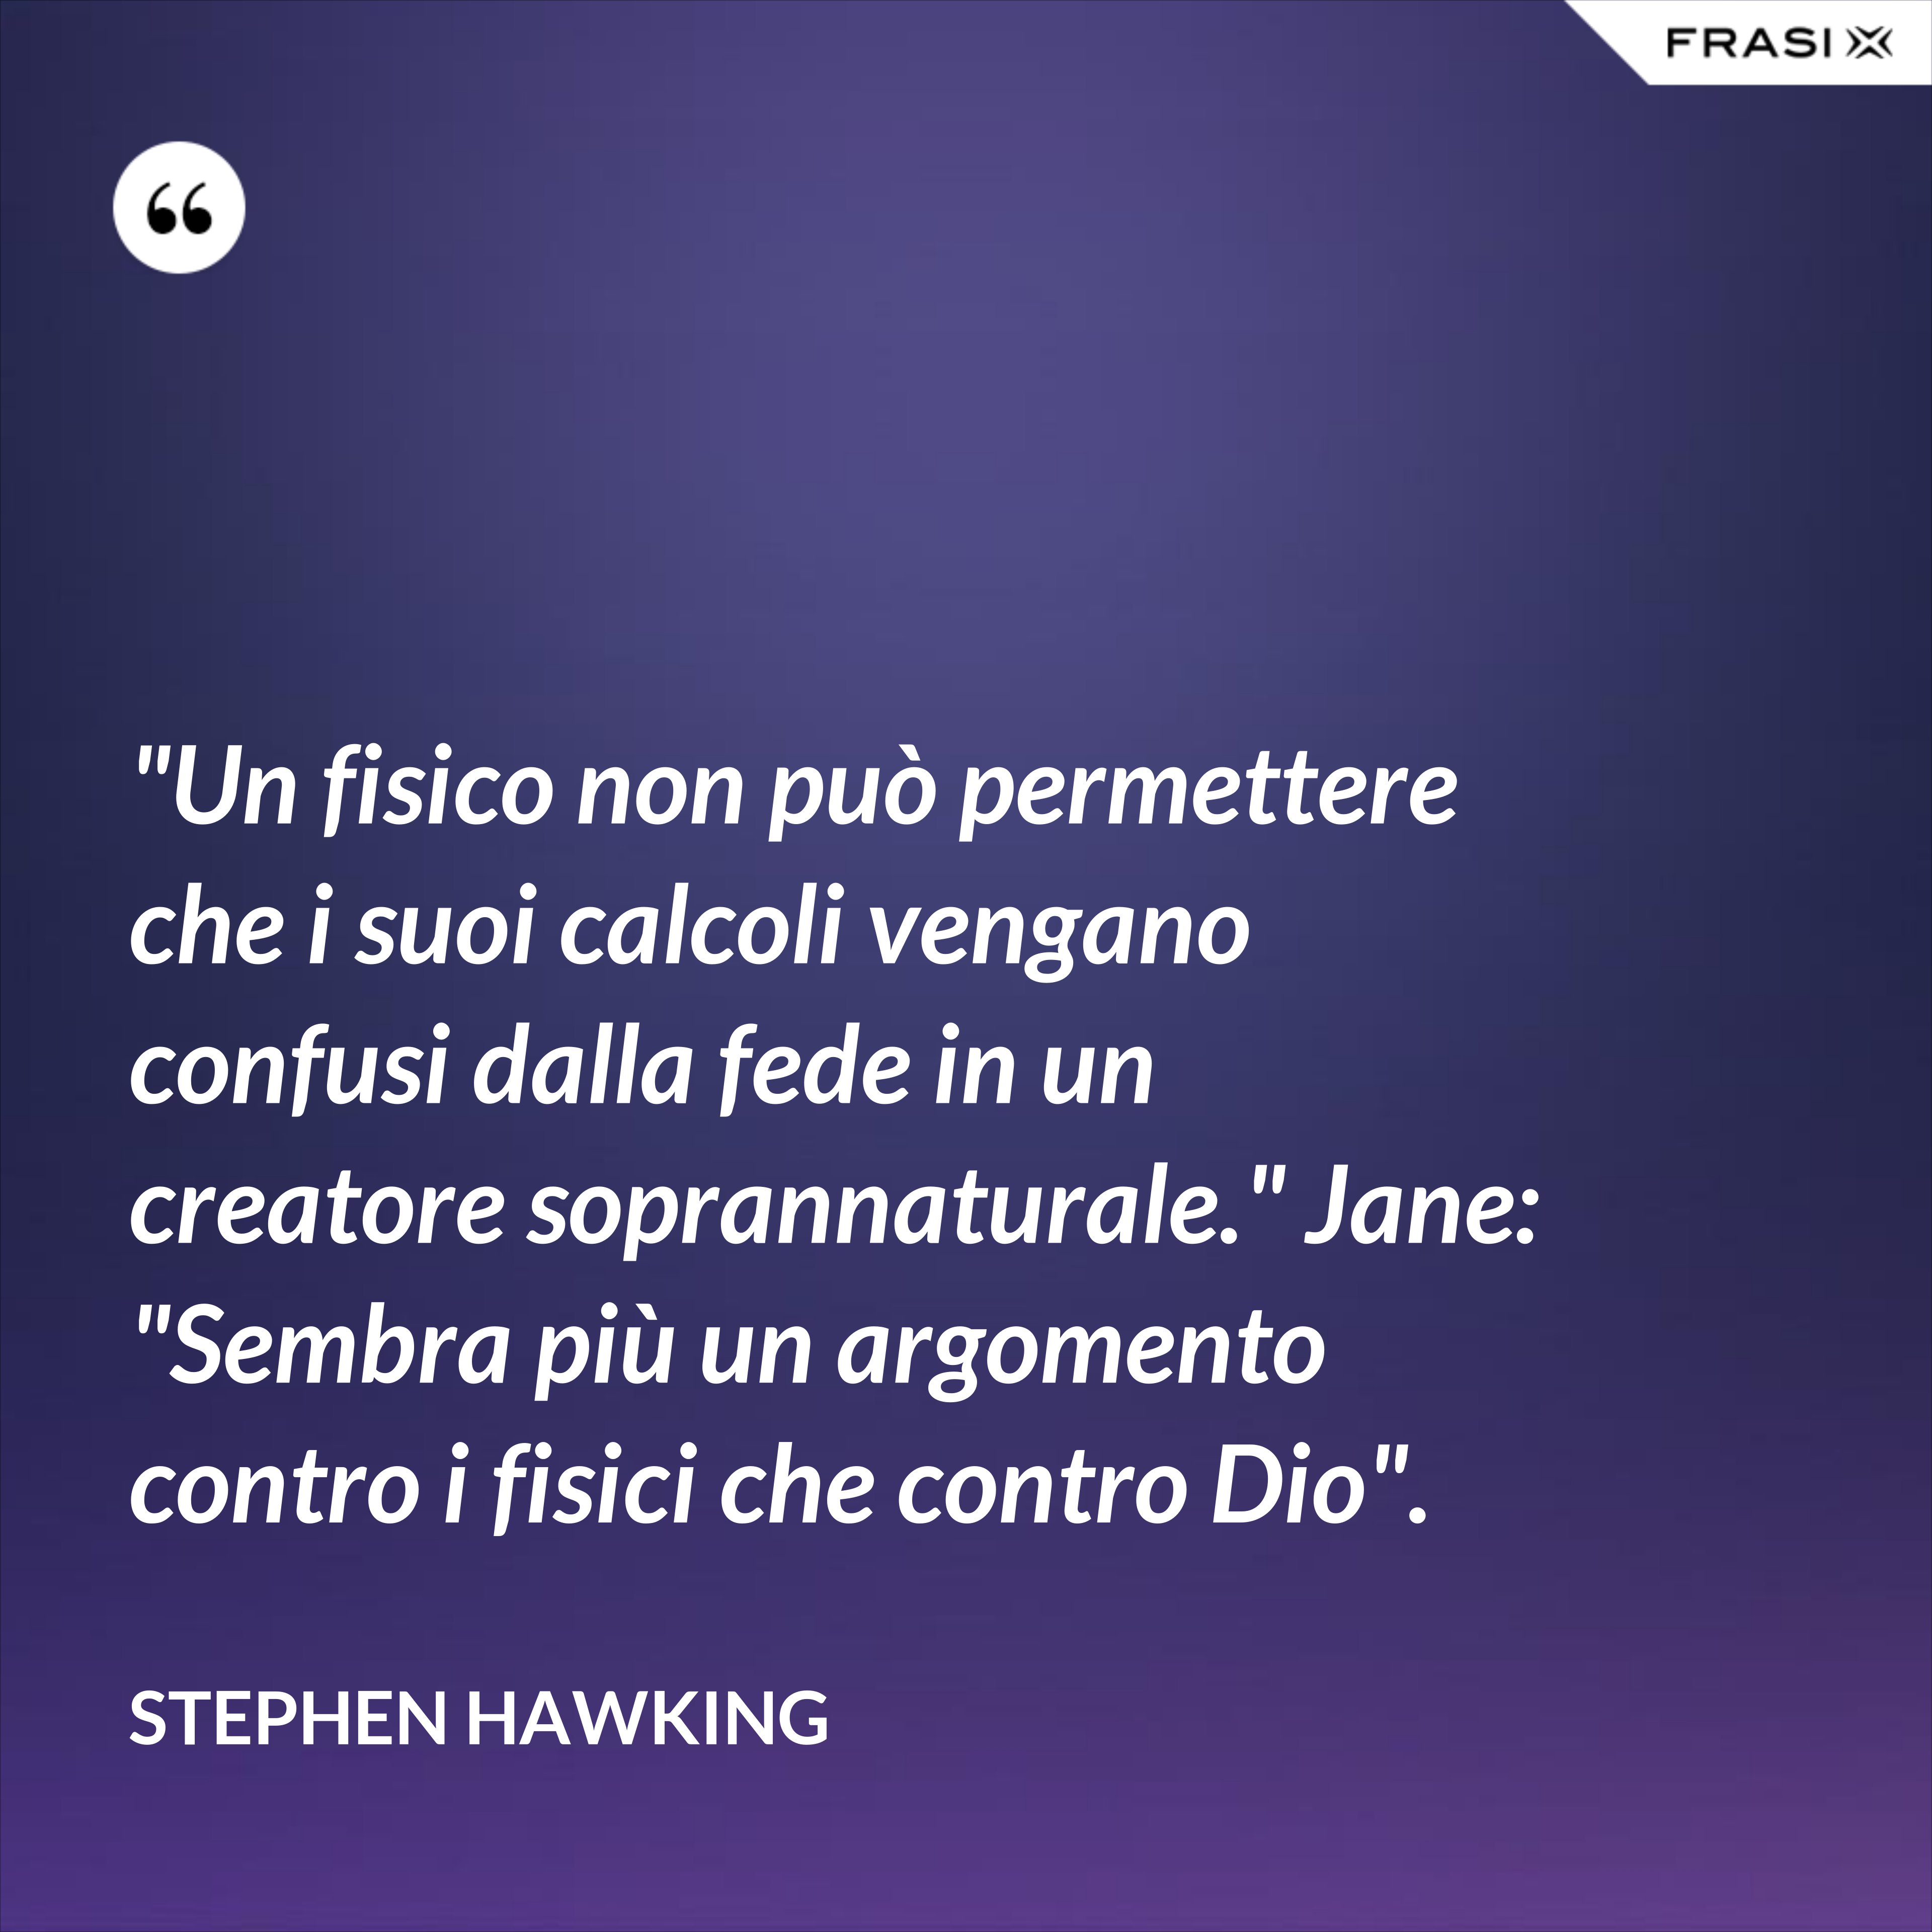 "Un fisico non può permettere che i suoi calcoli vengano confusi dalla fede in un creatore soprannaturale." Jane: "Sembra più un argomento contro i fisici che contro Dio". - Stephen Hawking